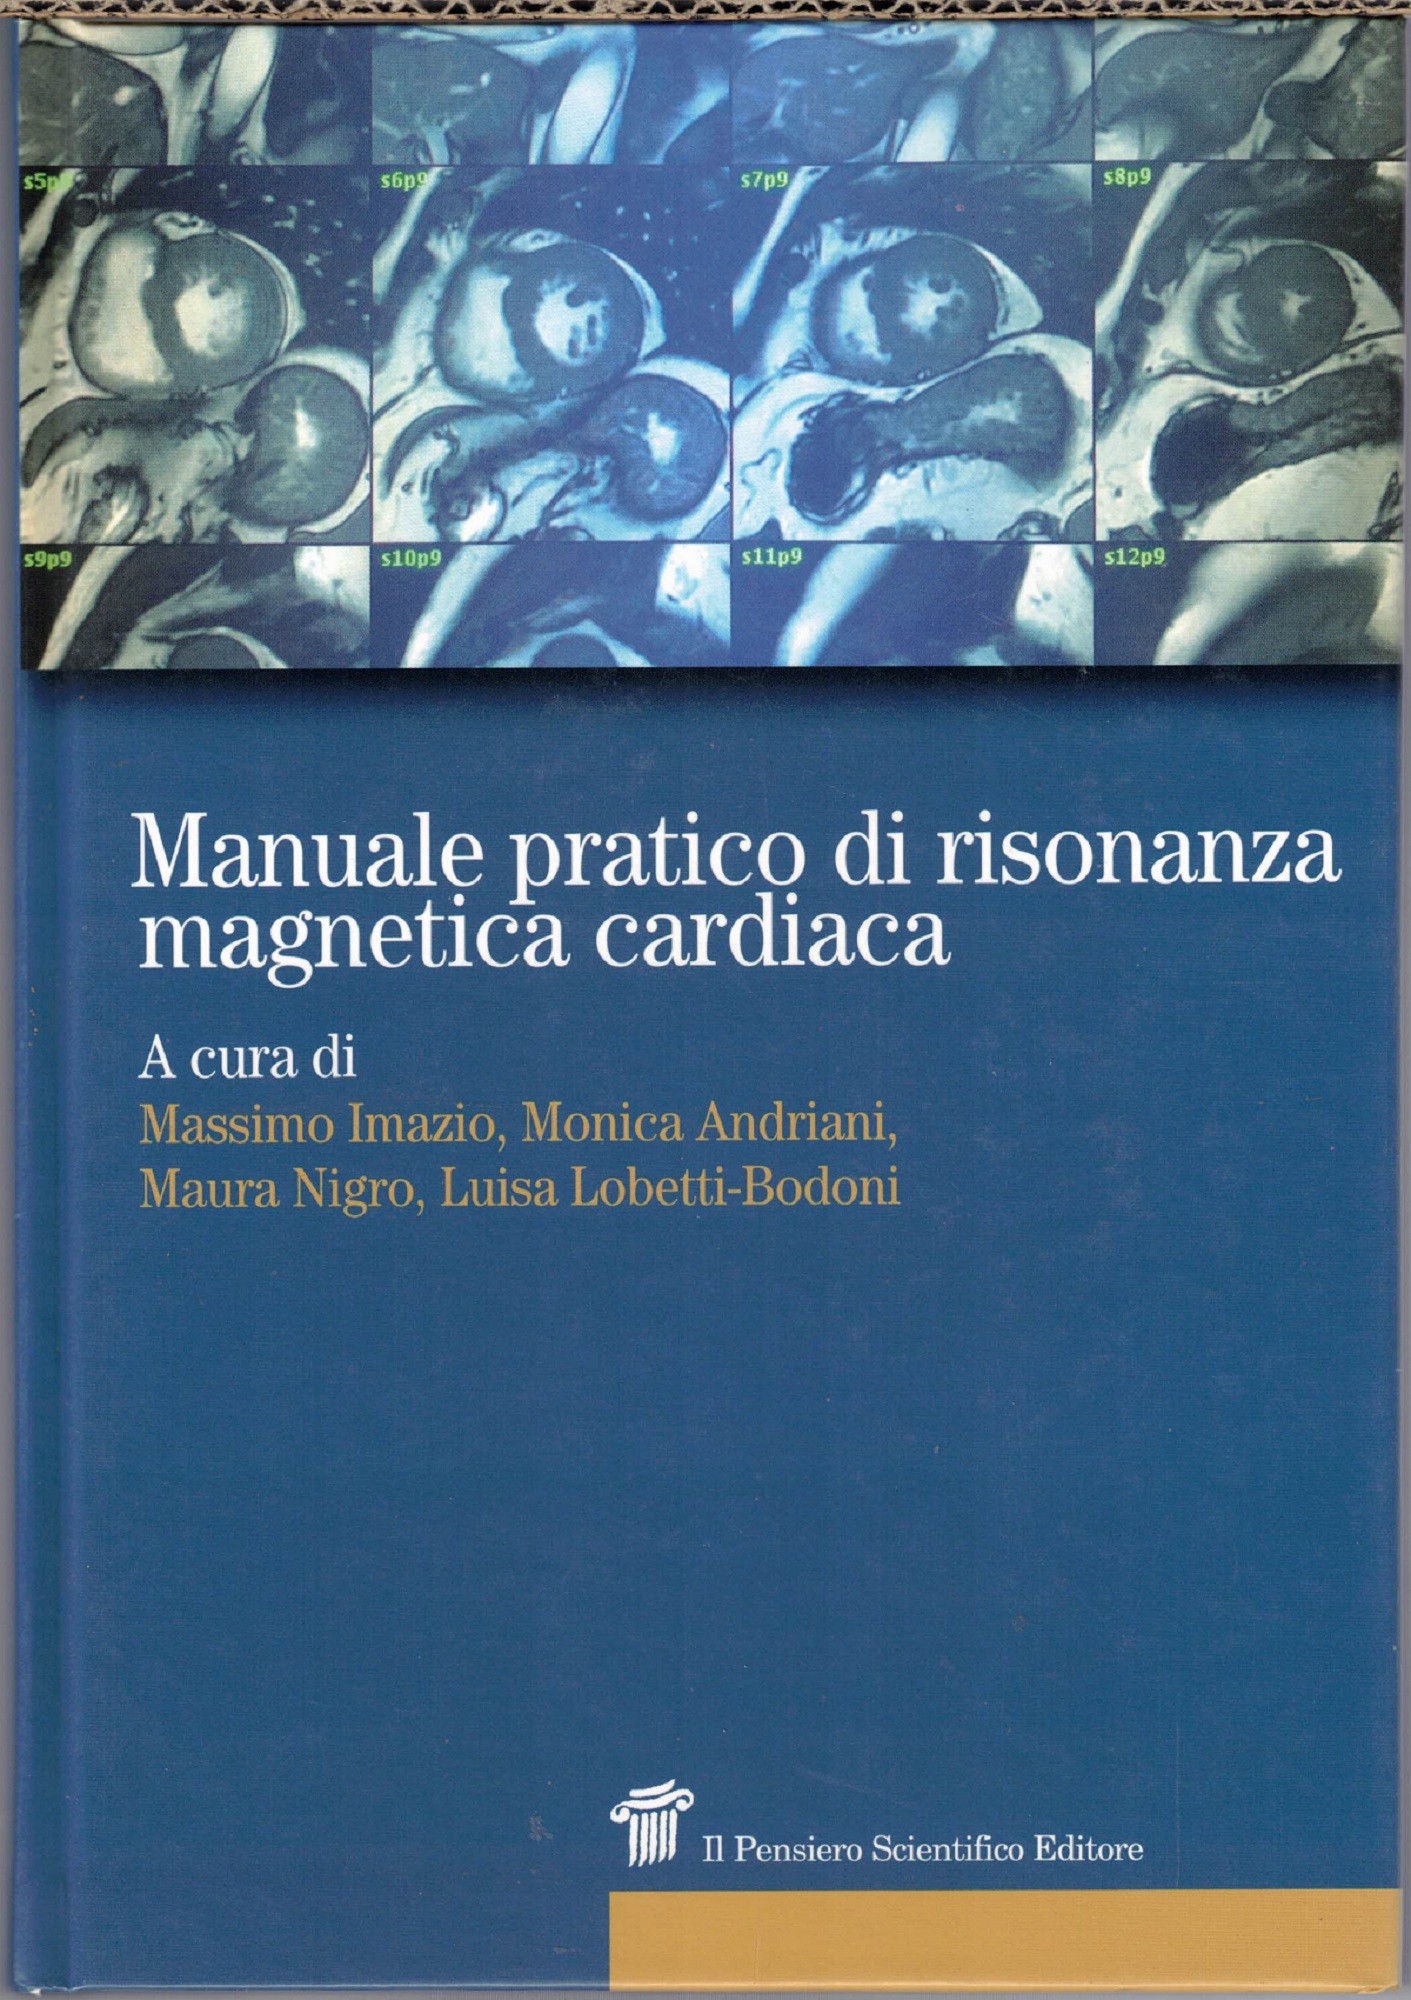 Imazio et al., Manuale pratico di risonanza magnetica cardiaca